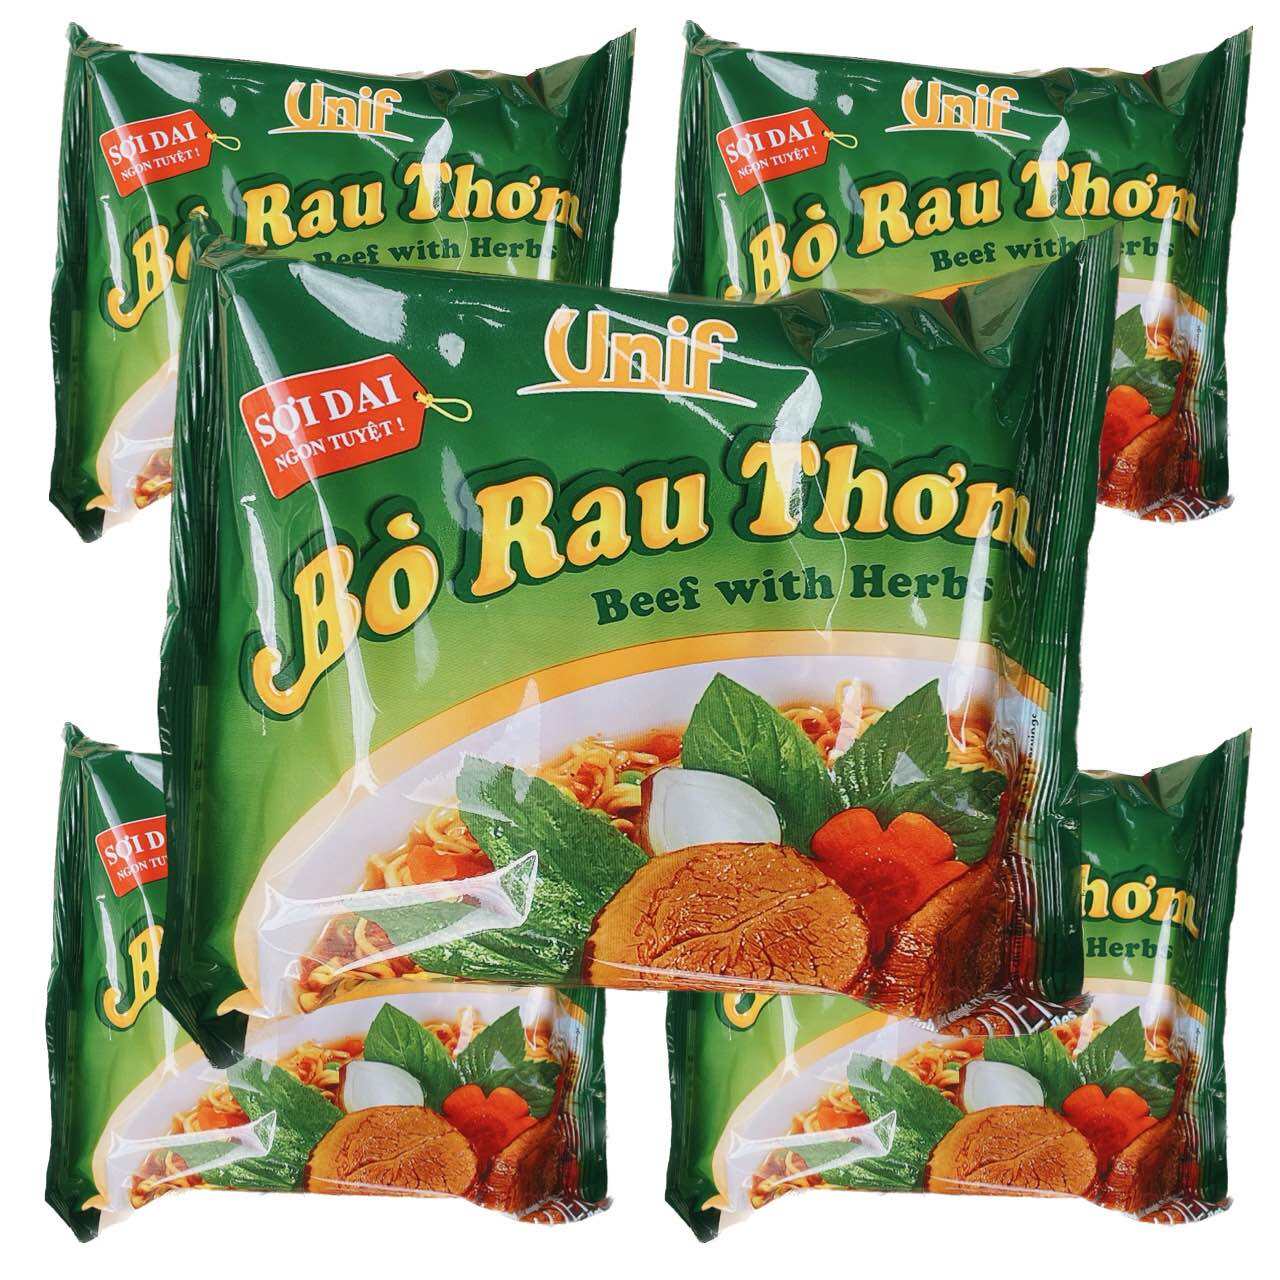 SỢI DAI NGON TUYỆT Combo 10 gói mì Bò Rau Thơm Unif mỗi gói 72g -Date mới